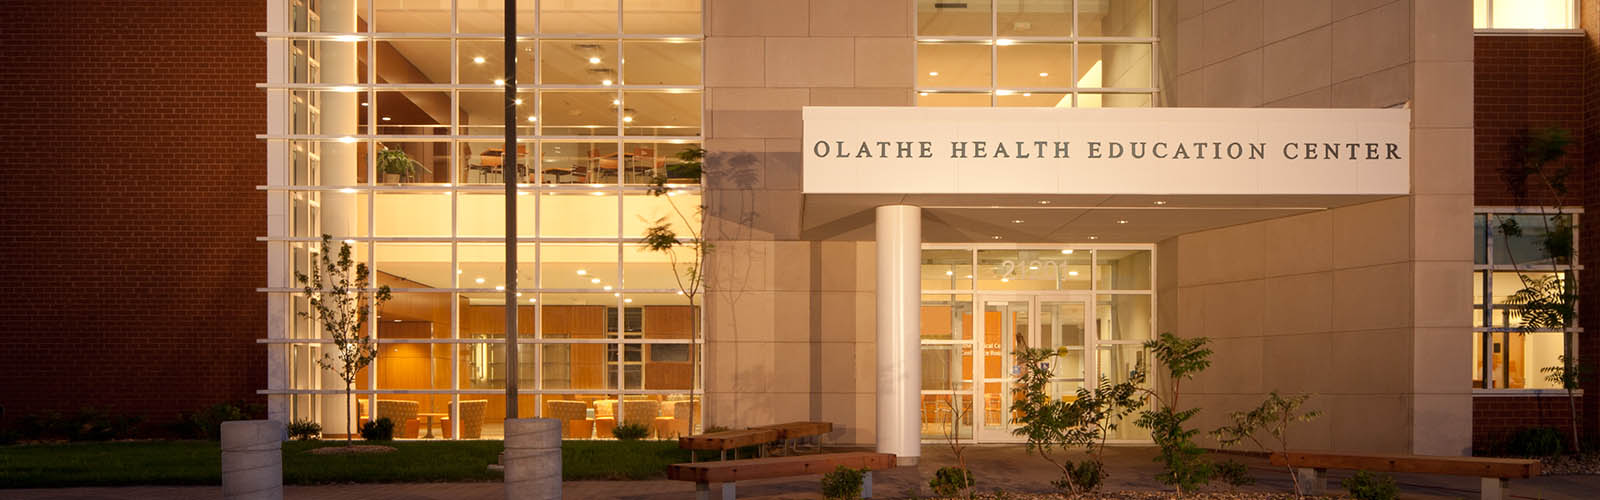 The Olathe Health Education Center 1